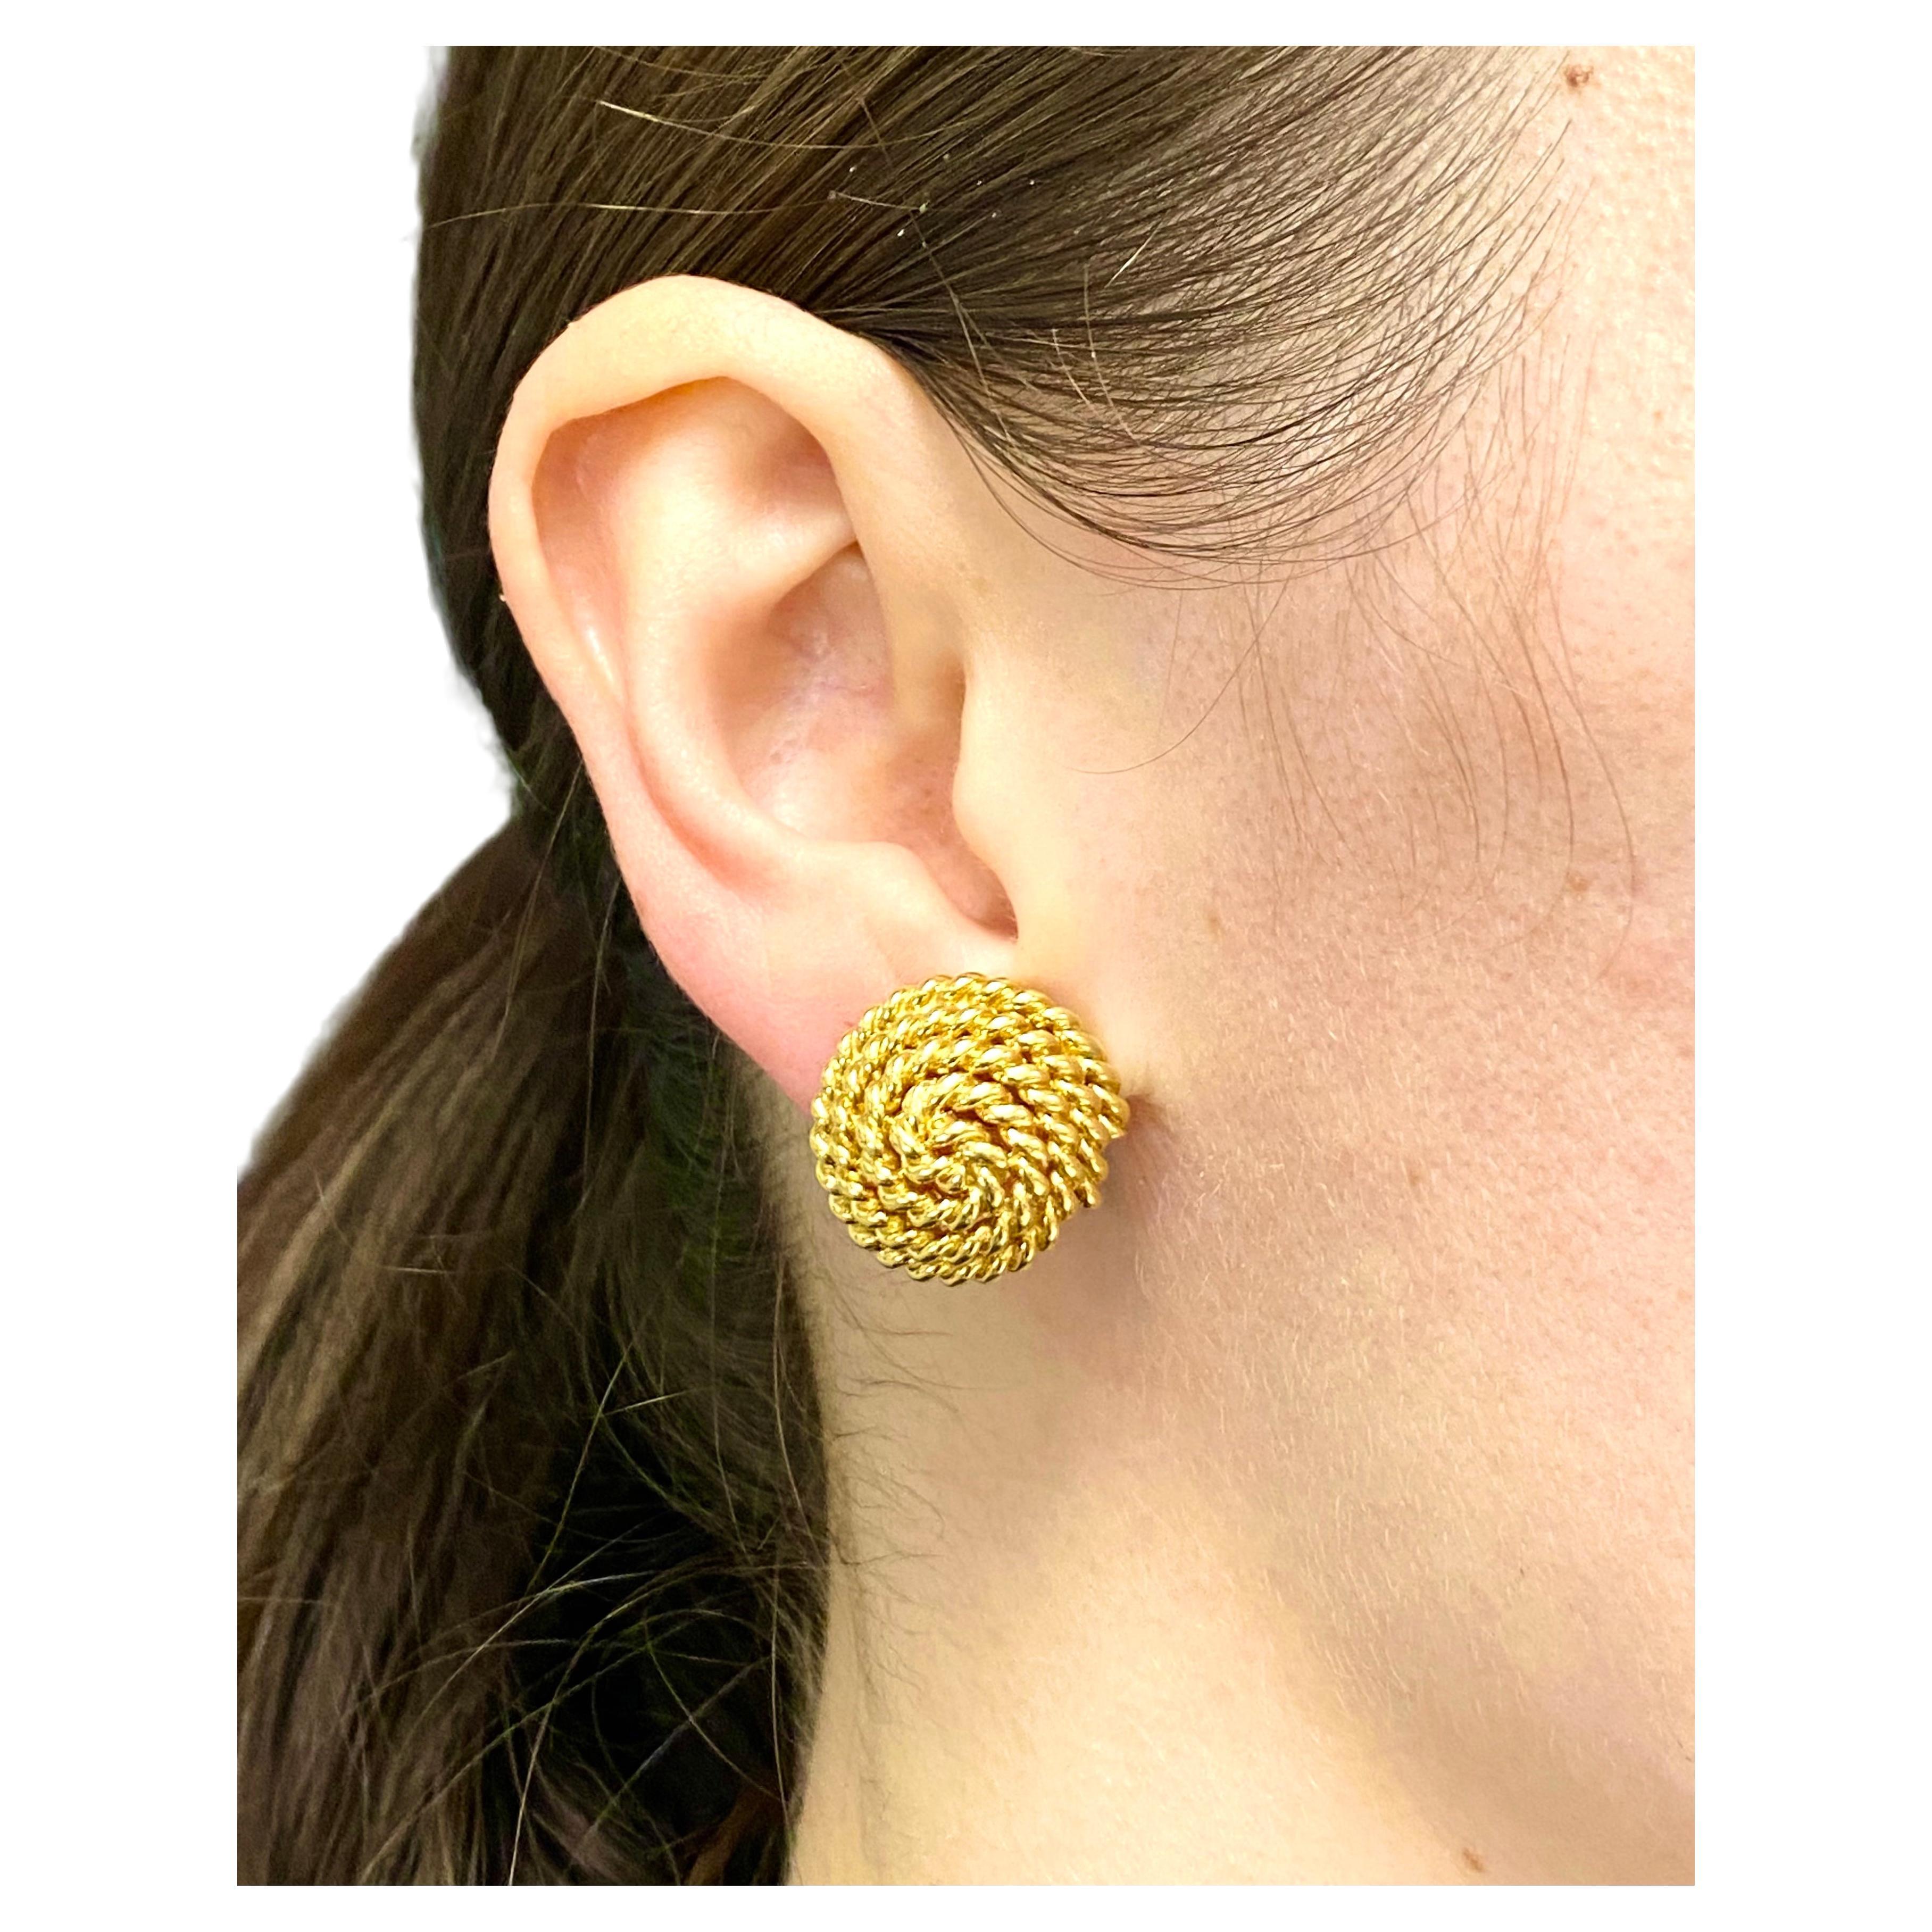 Une paire de boucles d'oreilles en corde de Tiffany & Co. en or 18k. Les boucles d'oreilles ont une forme convexe,
avec une corde en or mise en scène comme un tourbillon. L'or est poli et tressé, ce qui permet à l'objet d'avoir une bonne tenue.
Les